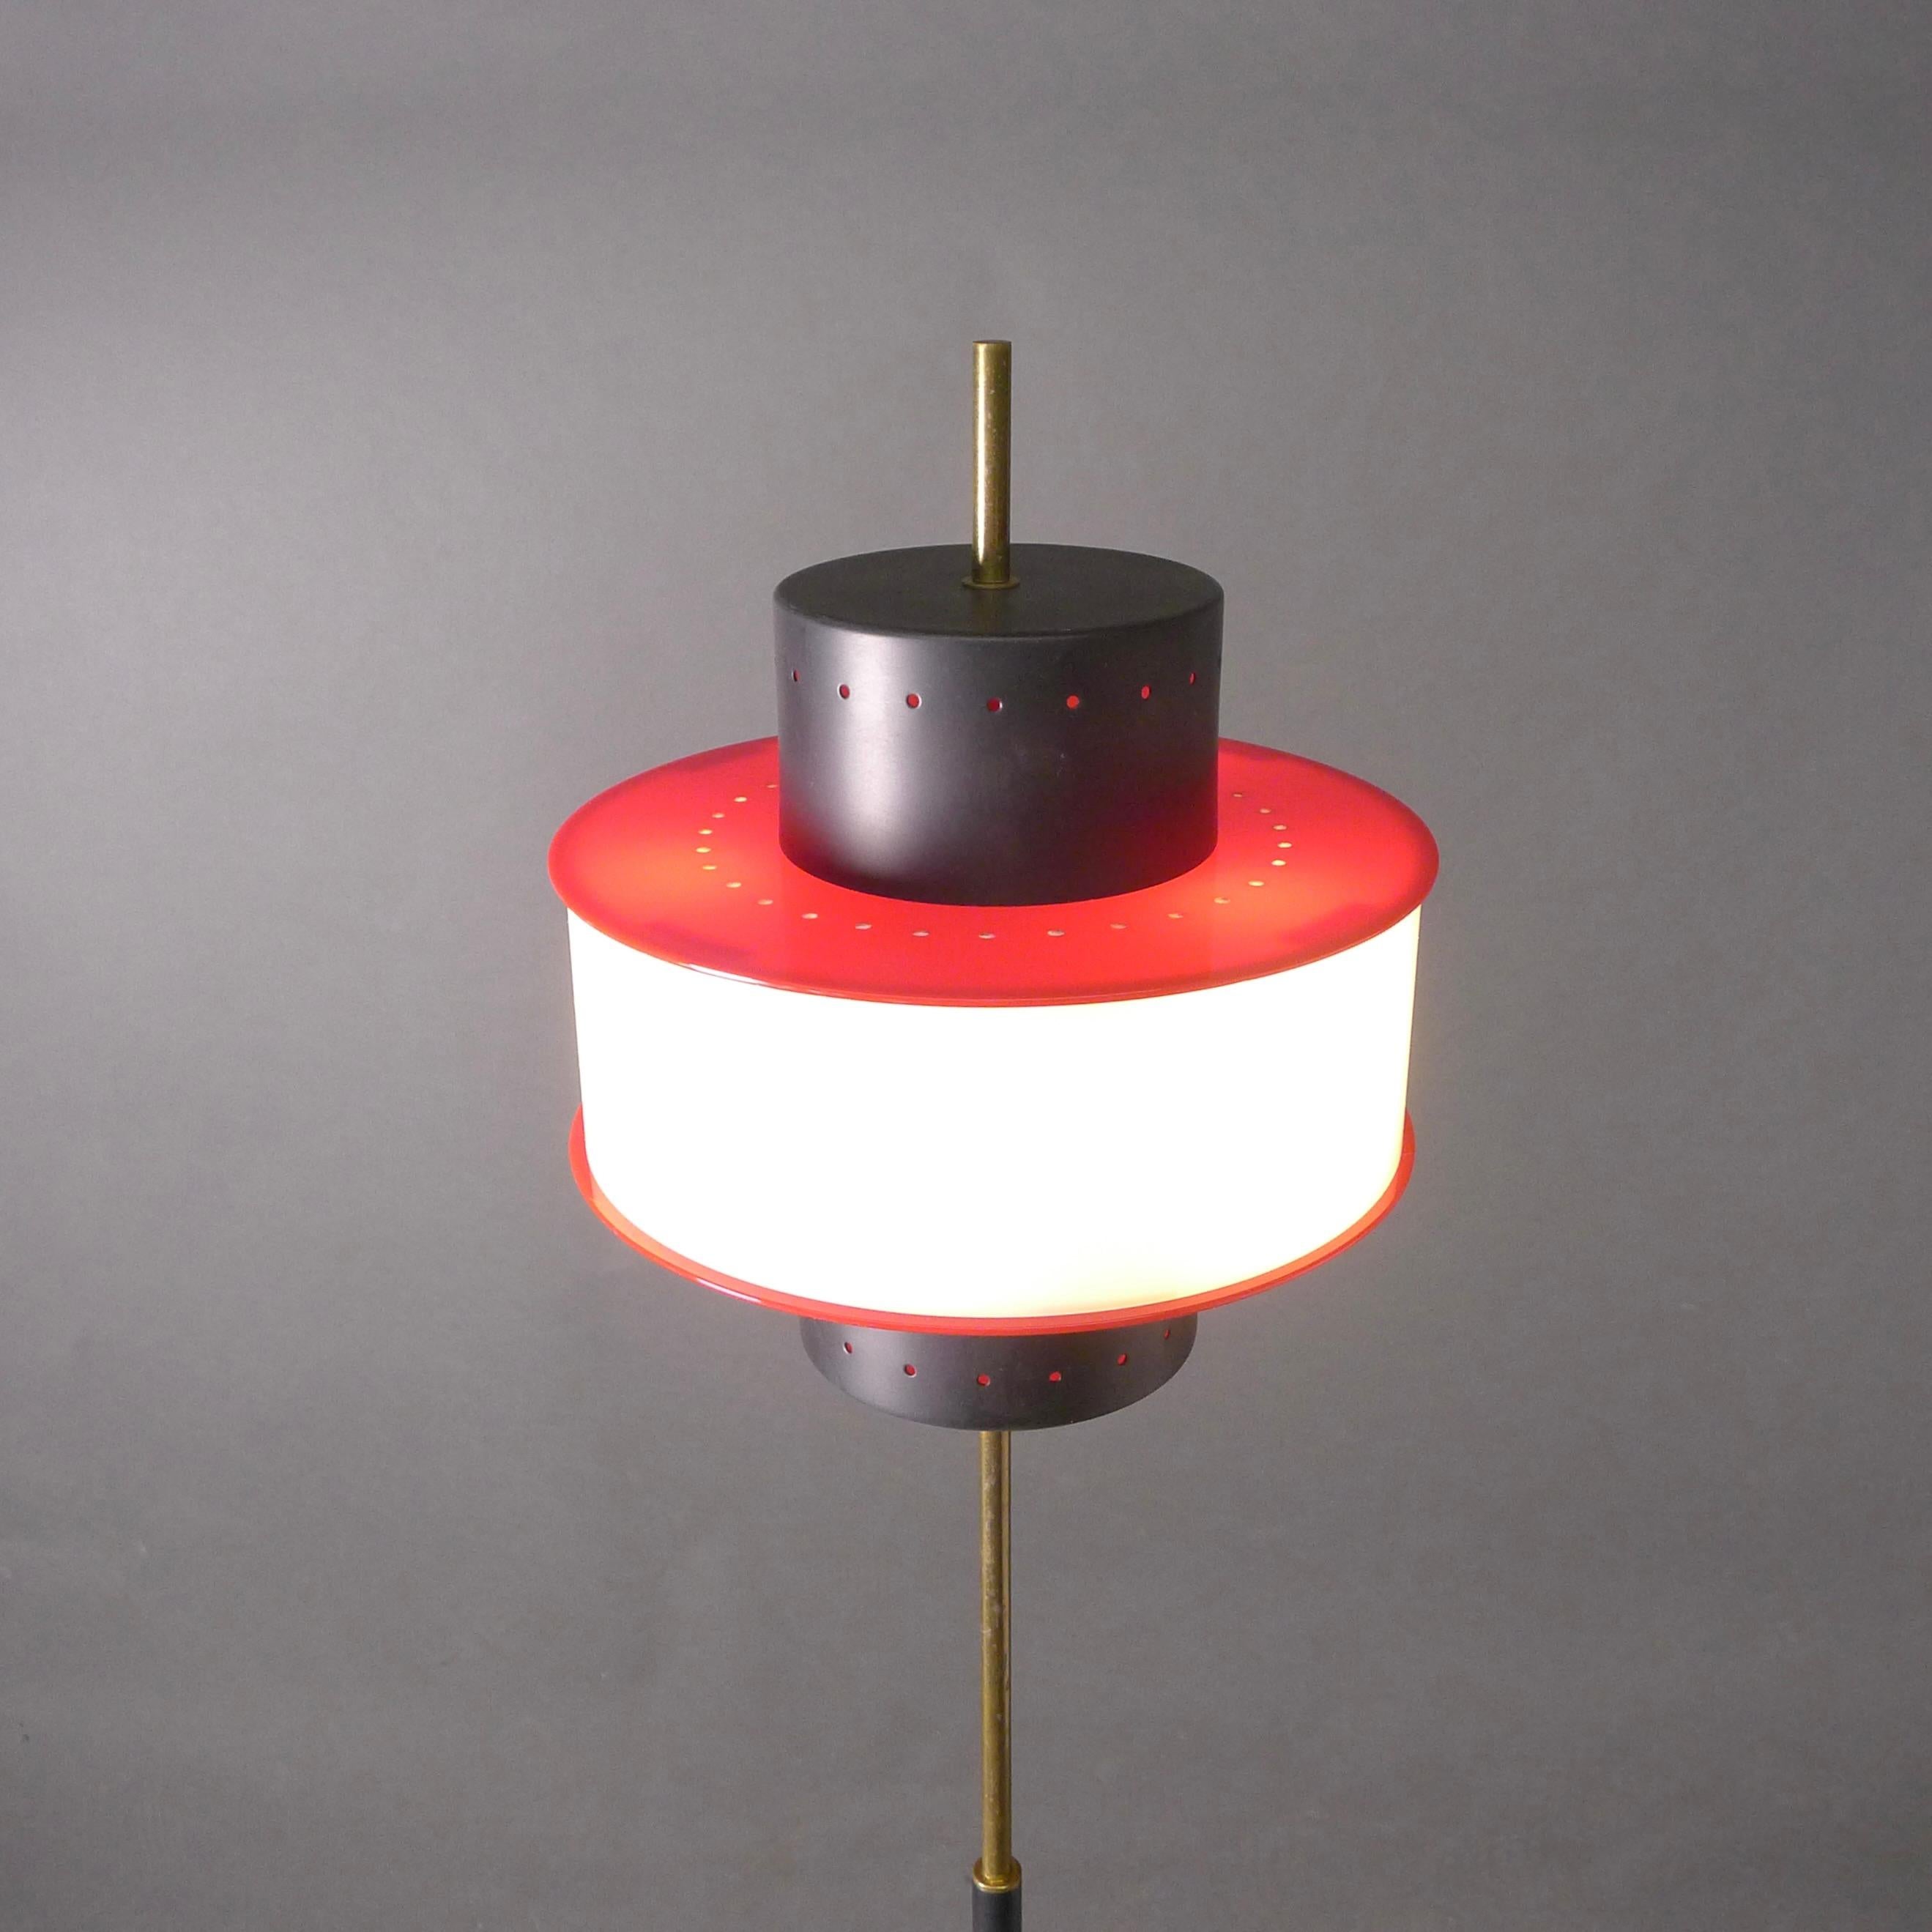 Stilnovo lampadaire vintage du milieu du siècle en noir, blanc et rouge.

Cet élégant lampadaire Stilnovo se compose d'un abat-jour cylindrique en métal émaillé noir entouré d'un diffuseur en plexiglas blanc et rouge, tous dotés de minuscules